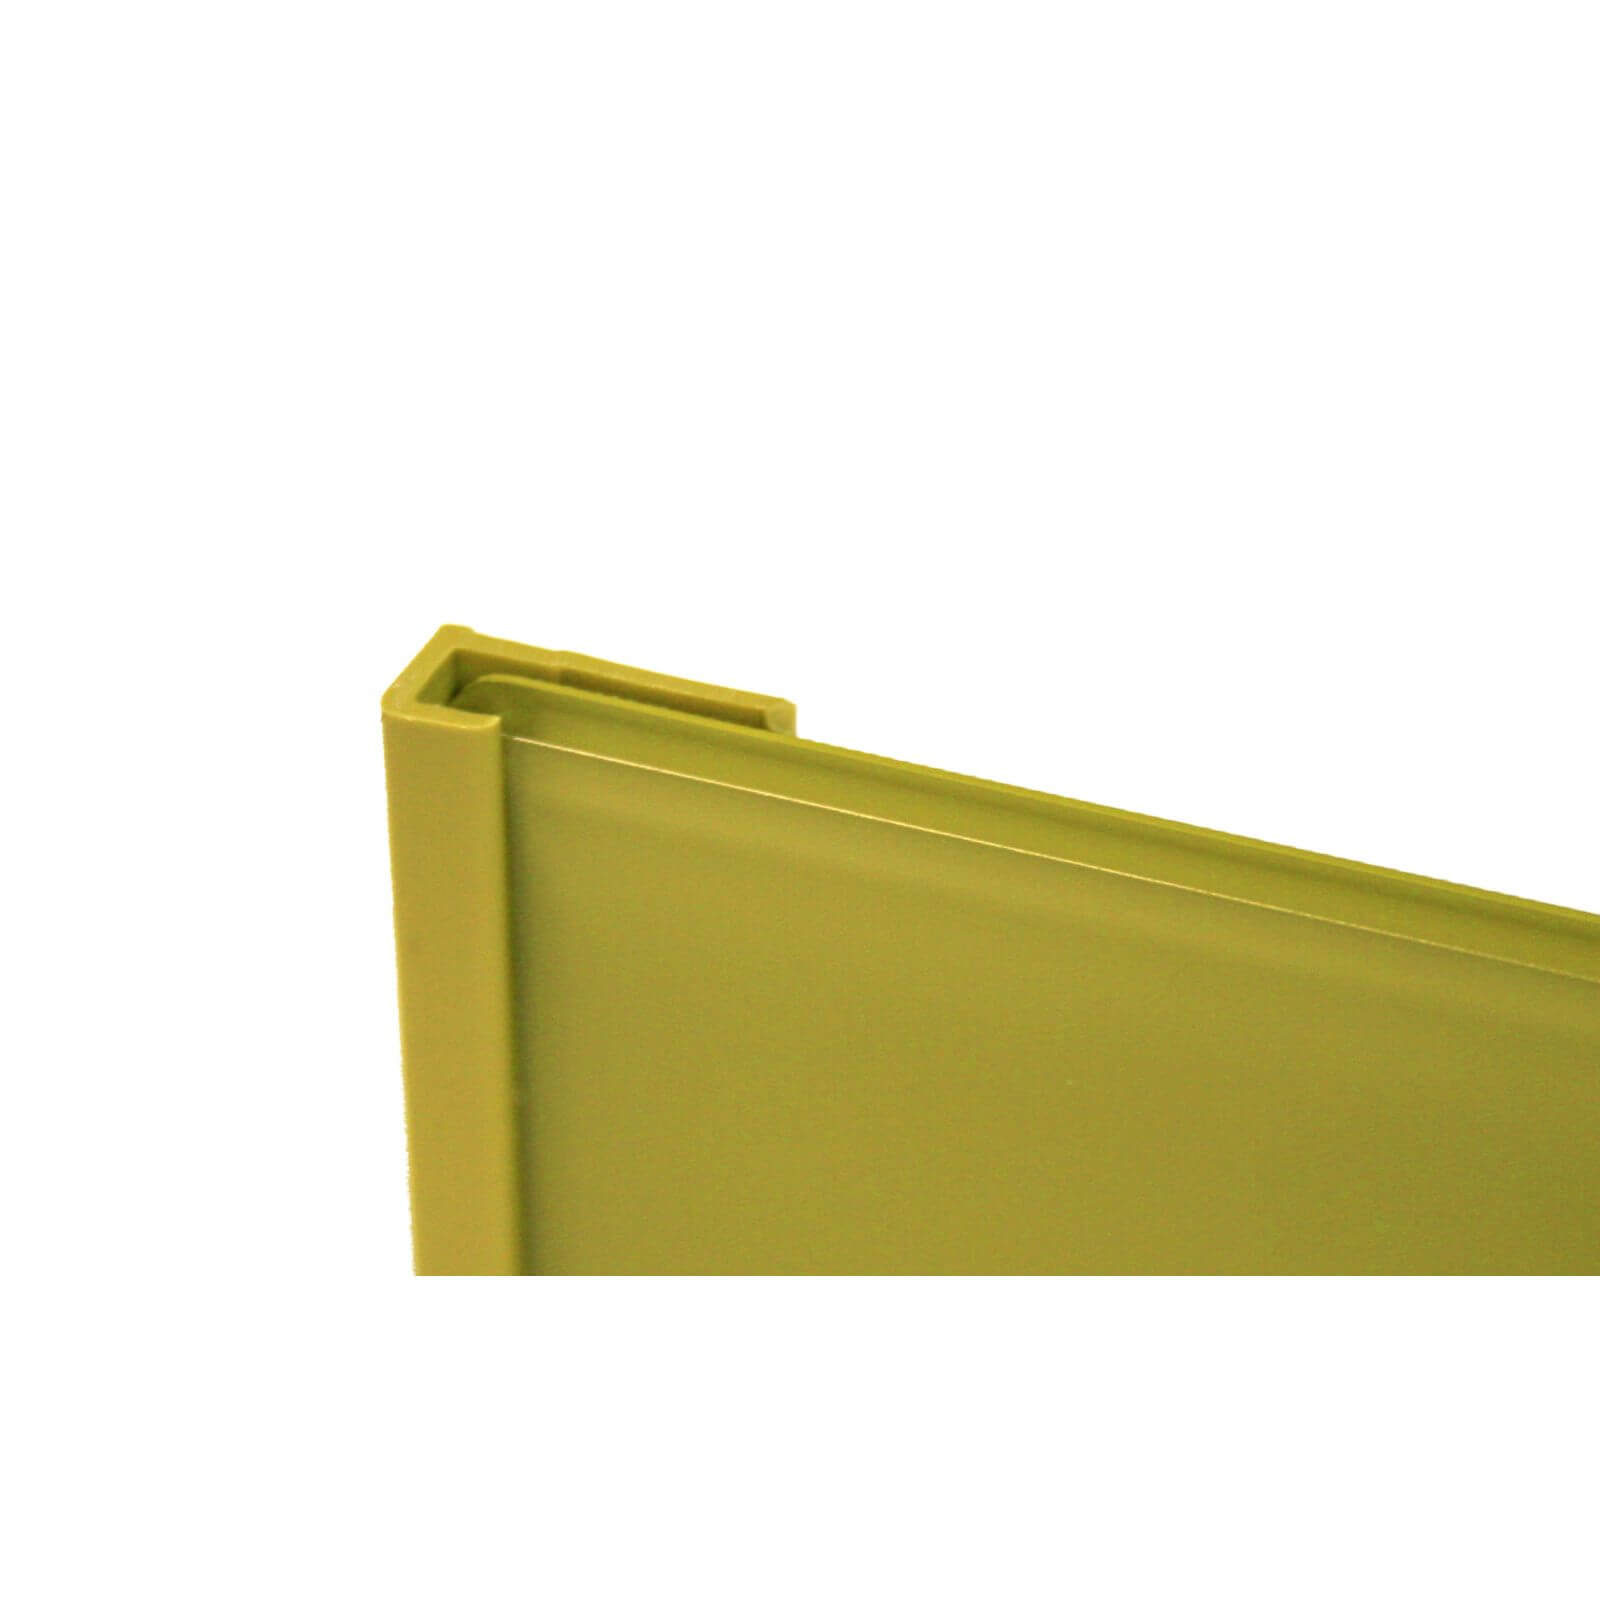 Zenolite Colour Matched PVC Edge Cap - 2500mm - Forest